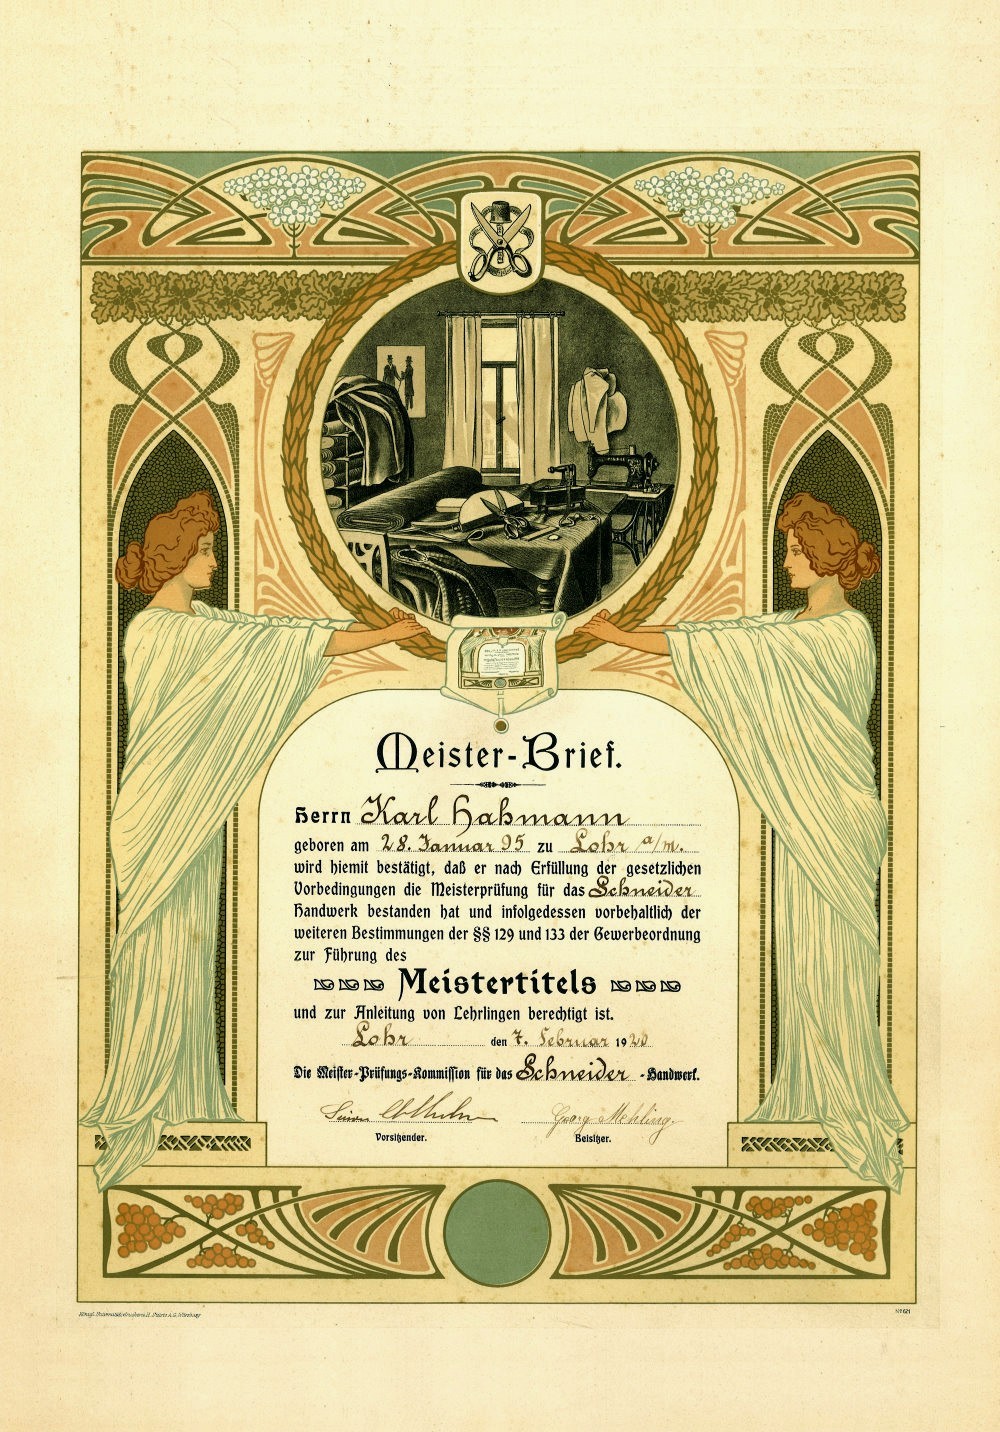 Meisterbrief des Lohrers Karl Hahmann 1920